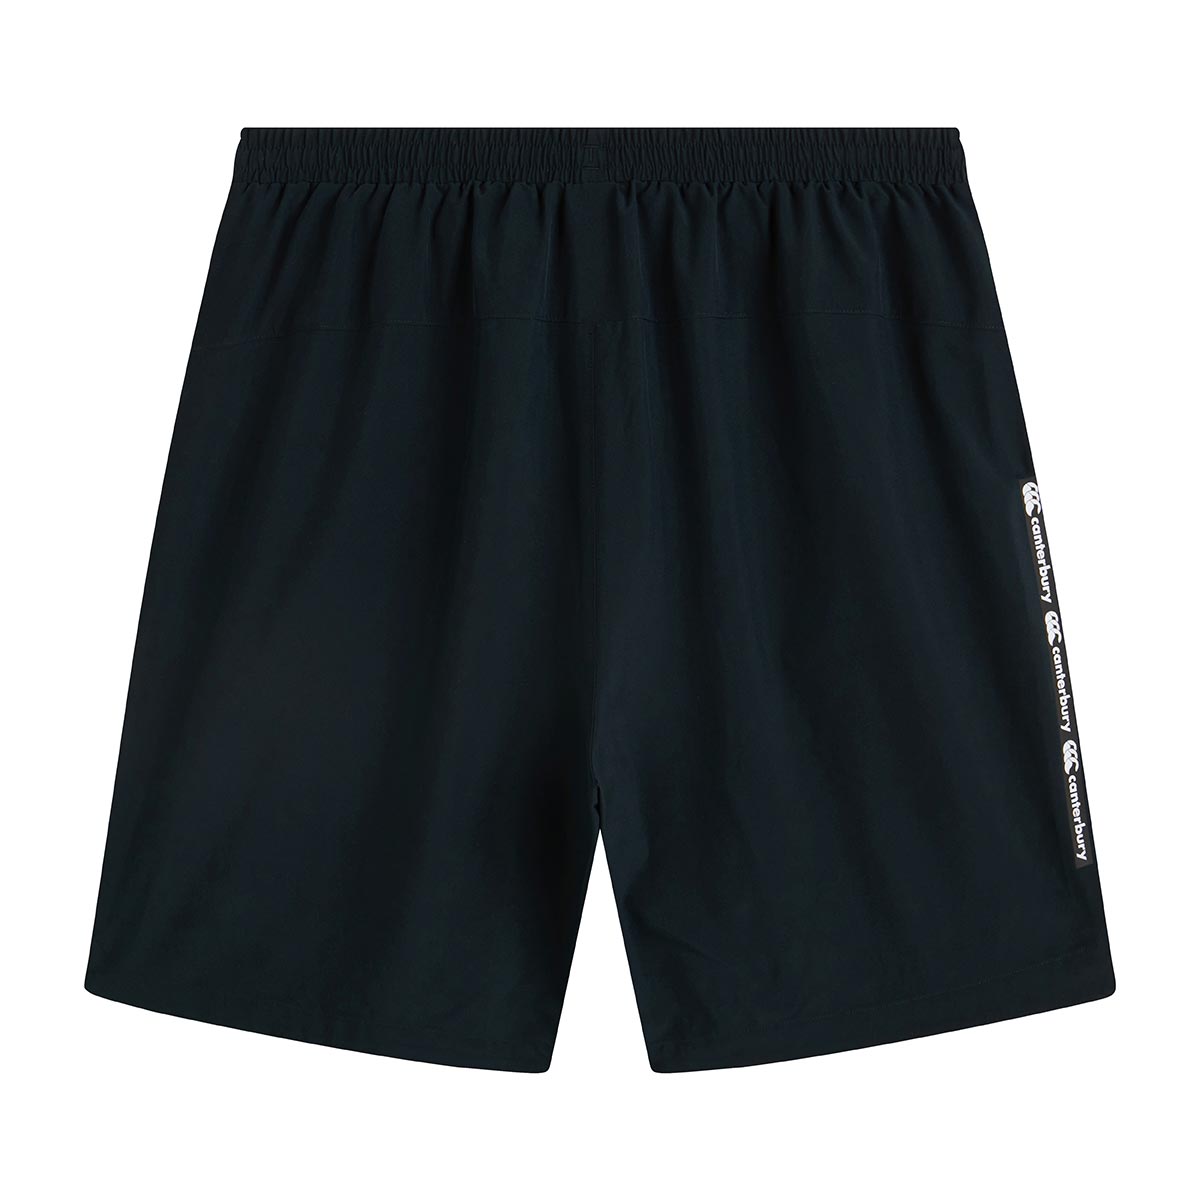 Canterbury Mens Gym Shorts - Black